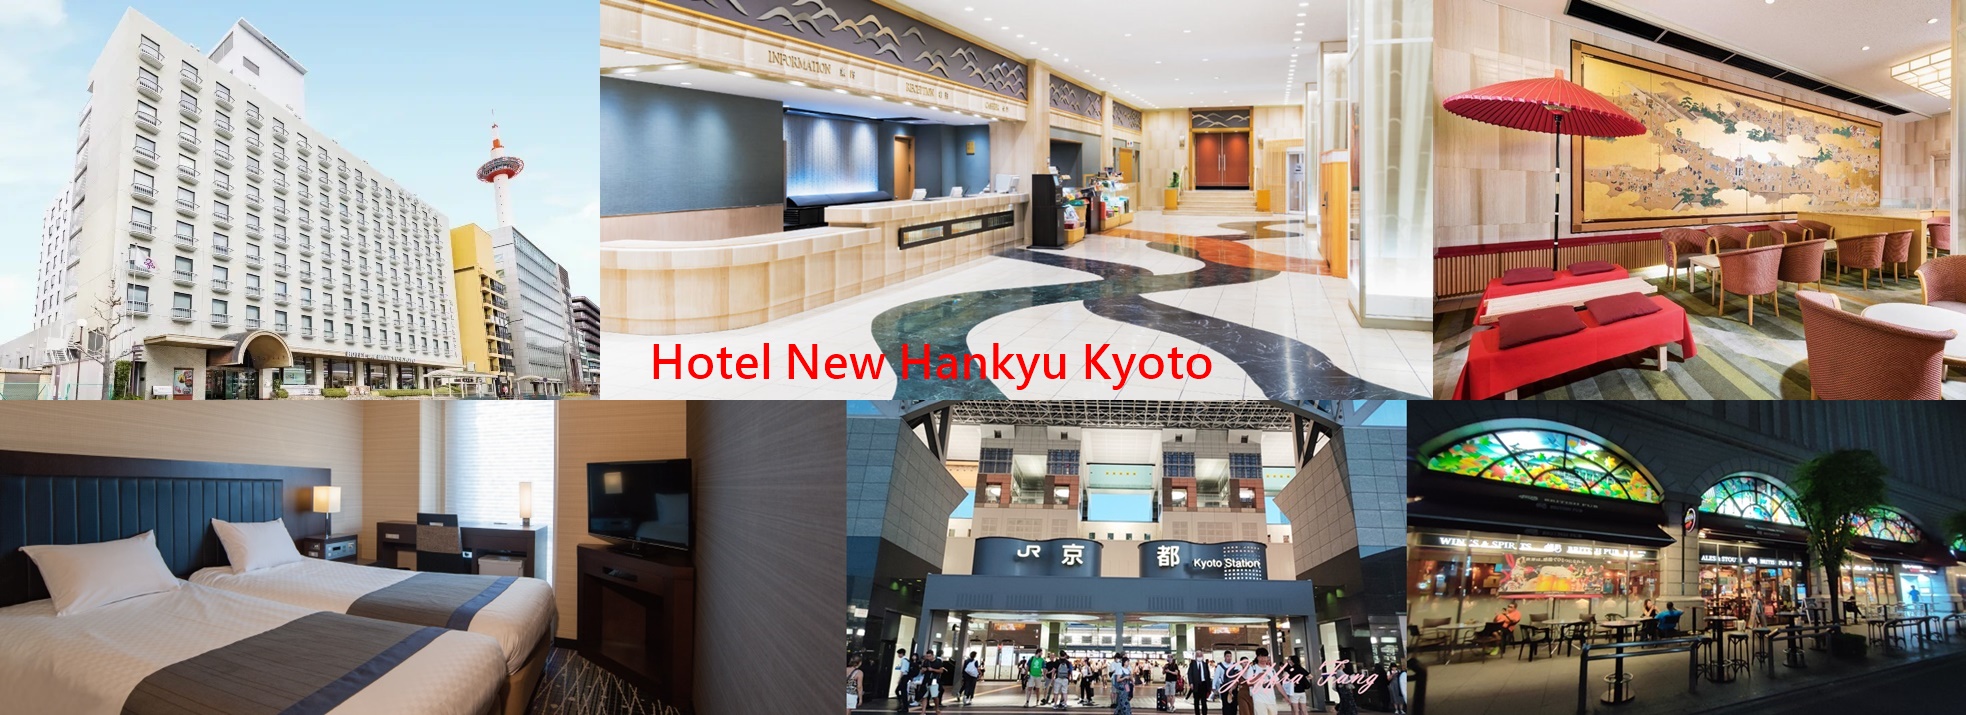 新阪急京都飯店